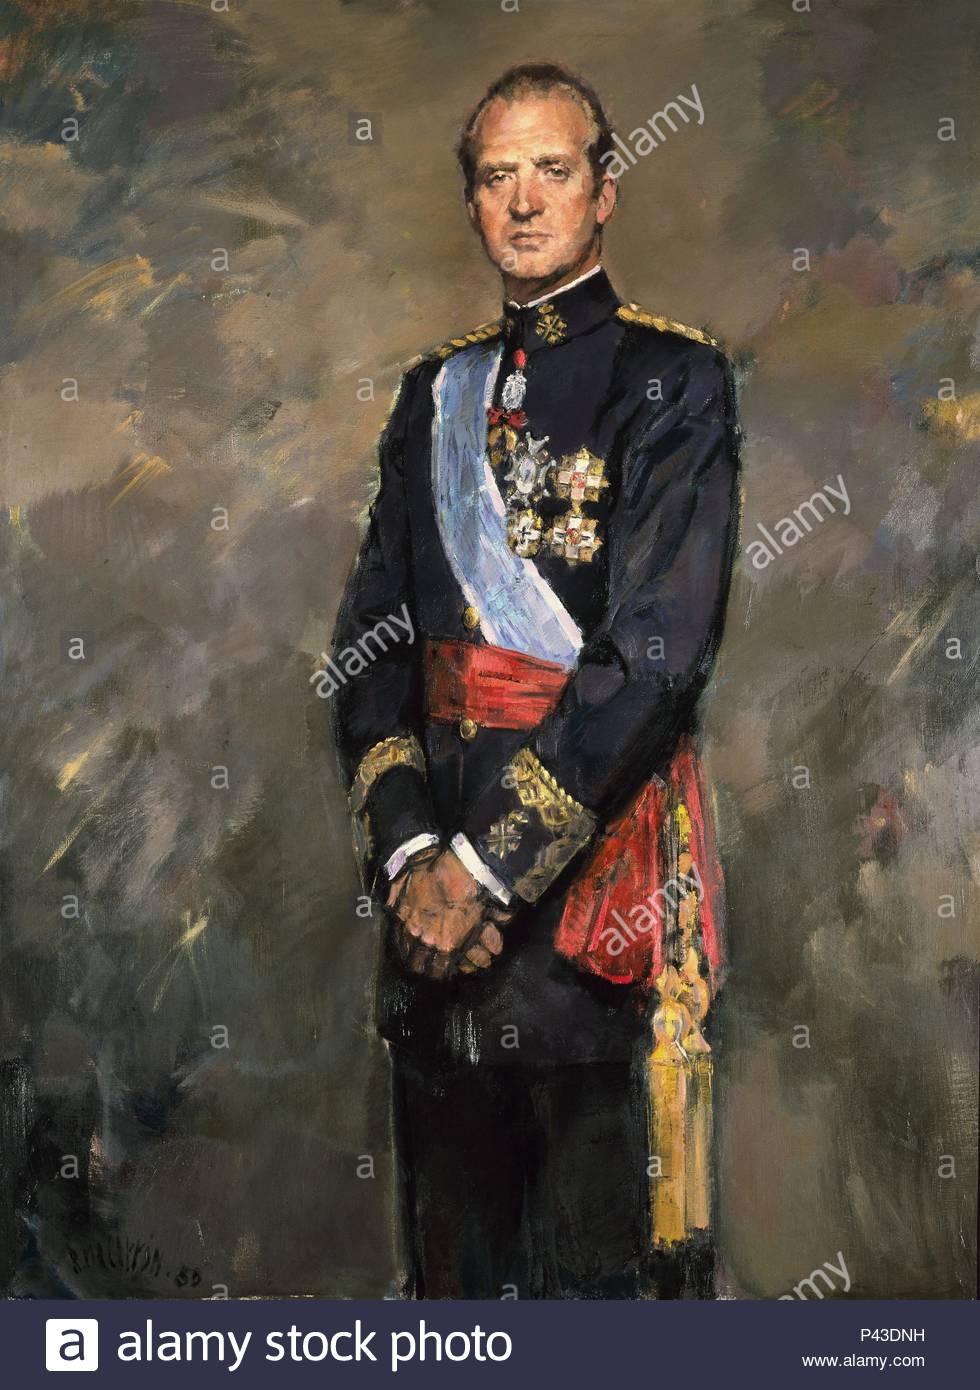 retrato-de-su-majestad-el-rey-juan-carlos-i-1977-l-147-x-114-n-178-inventario-autor-ricardo-macarron-1926-2004-ubicacion-senado-pintura-madrid-p43dnh.jpg